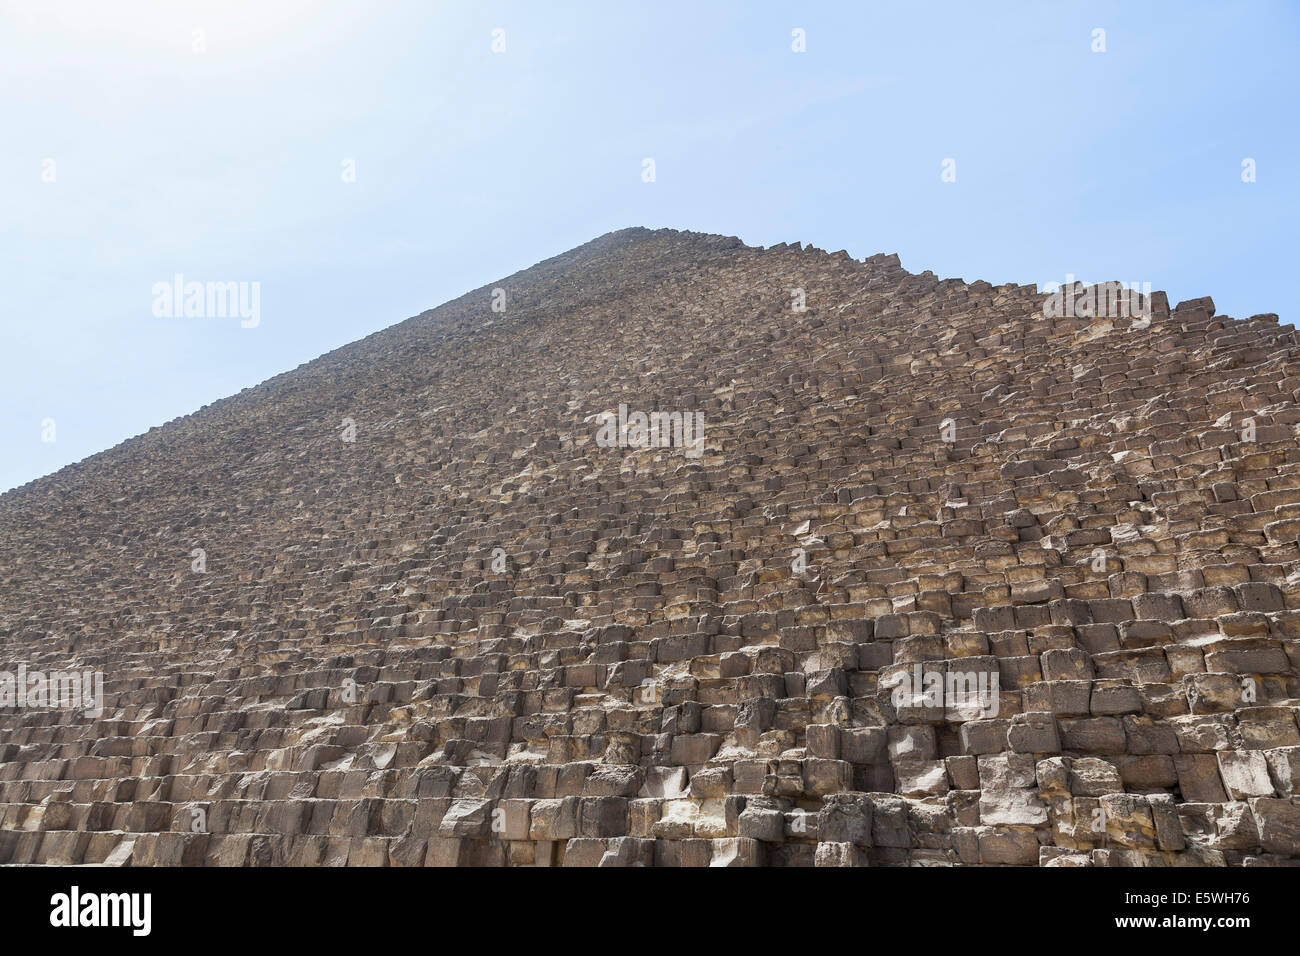 La grande pyramide de Gizeh au Caire, Egypte Banque D'Images